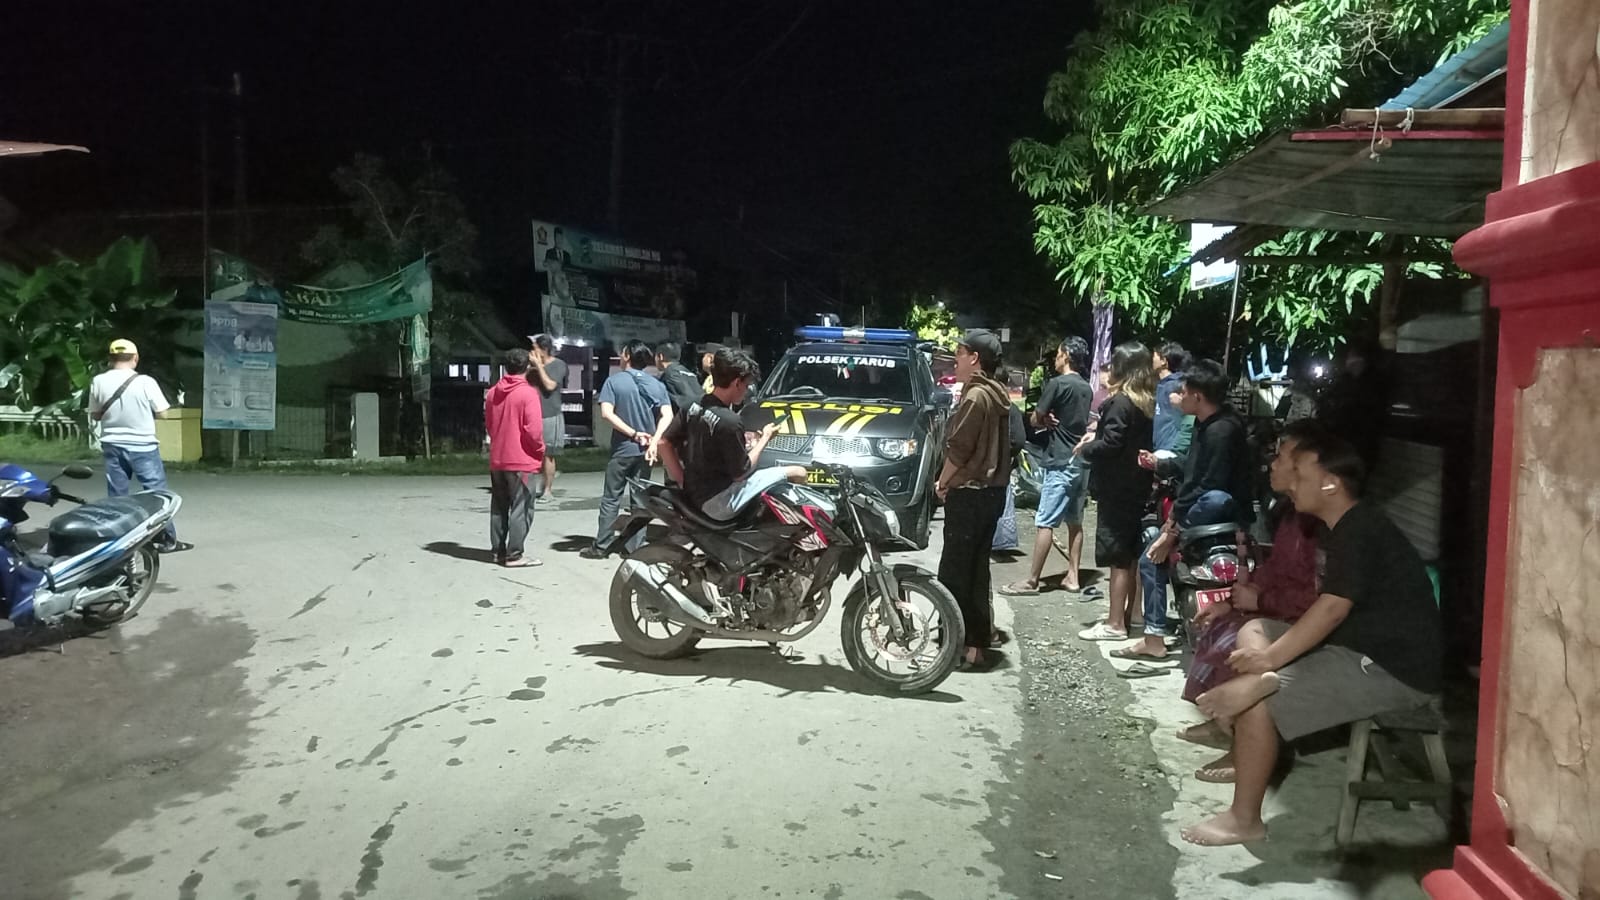 Perang Sarung antar Desa di Kabupaten Tegal Berhasil Digagalkan, Polisi Amankan 3 Remaja